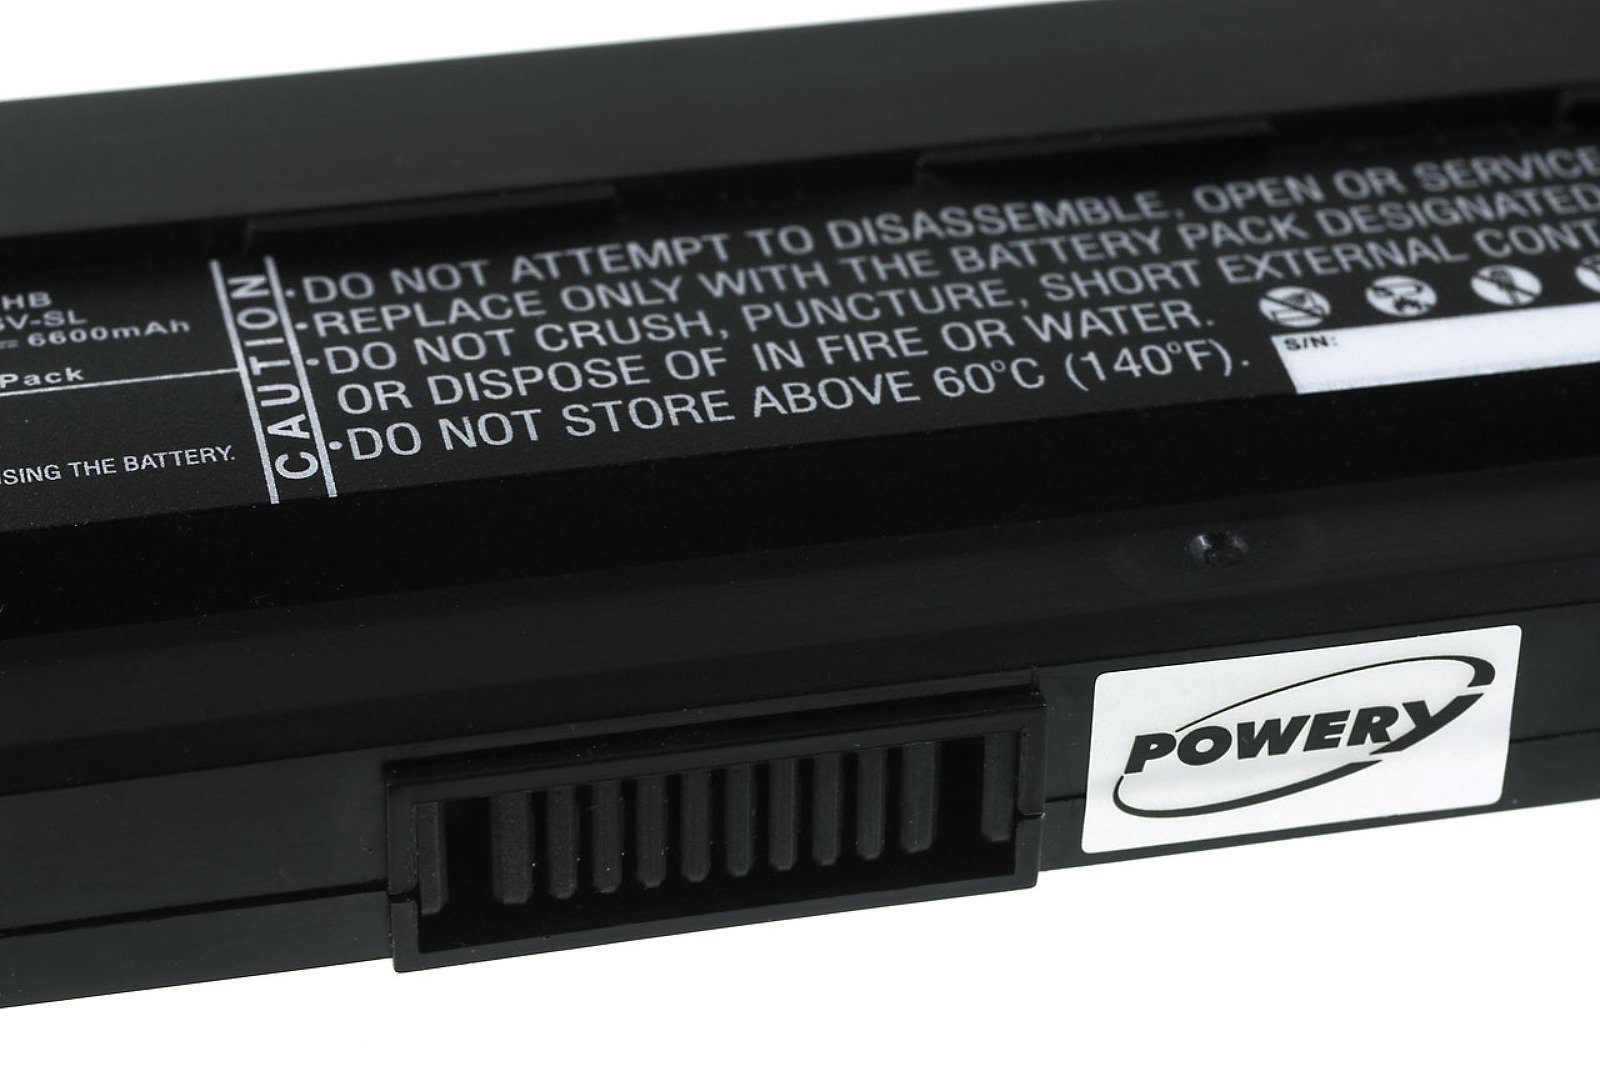 Powery Powerakku für Laptop-Akku mAh Asus 6600 Laptop A54C V) (11.1